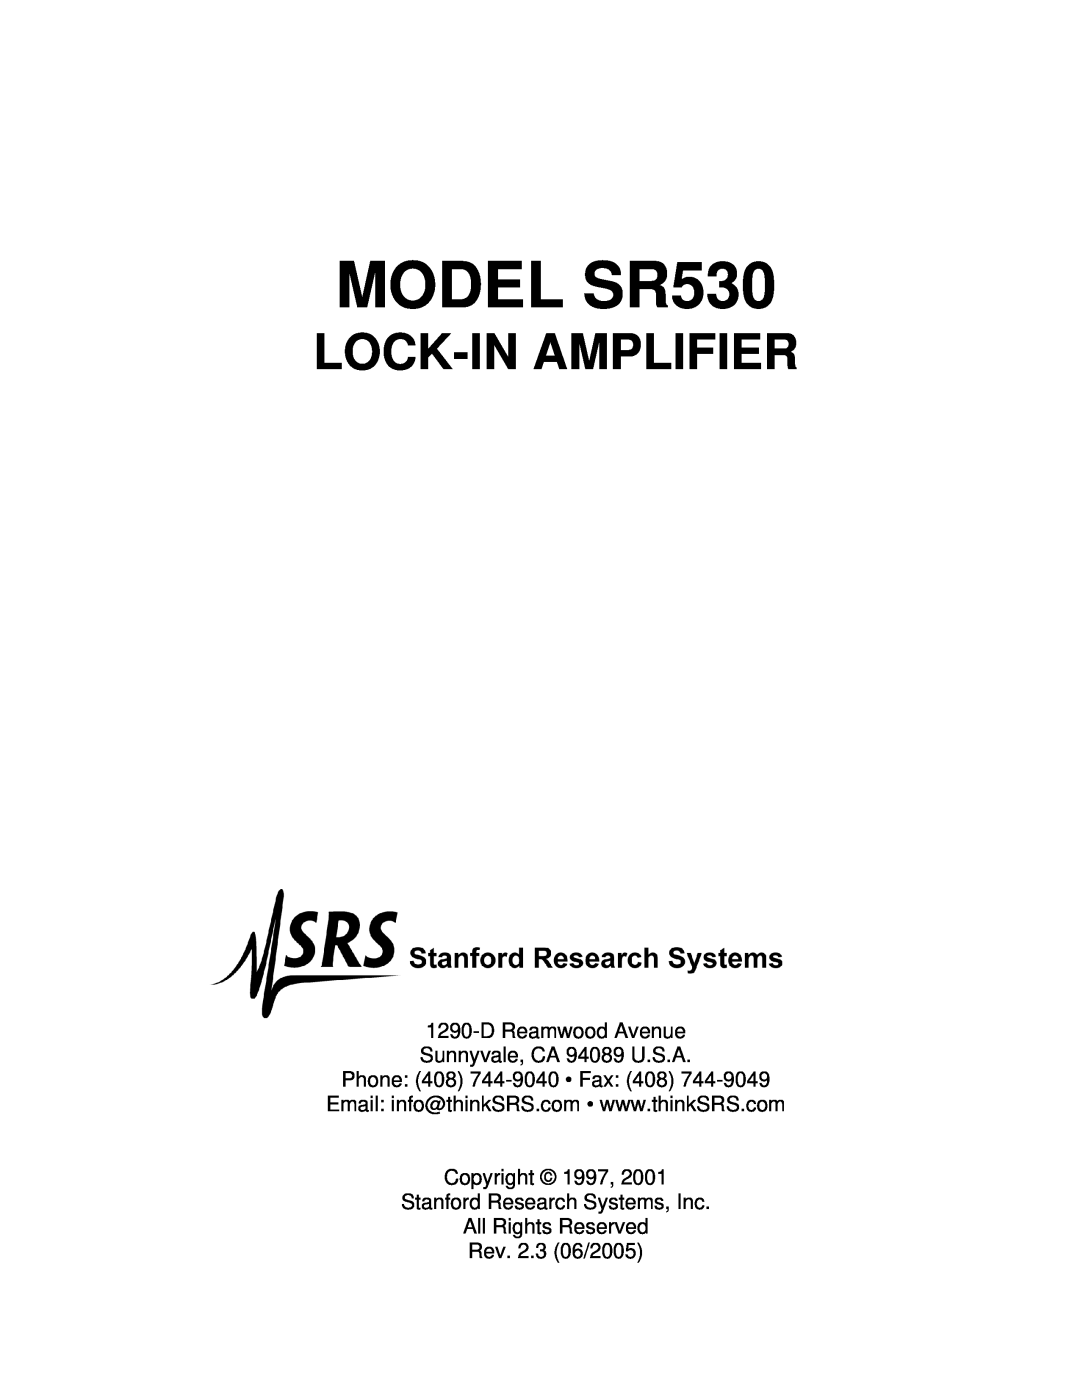 SRS Labs Lock-In Amplifier manual MODEL SR530, Lock-Inamplifier, DReamwood Avenue Sunnyvale, CA 94089 U.S.A 